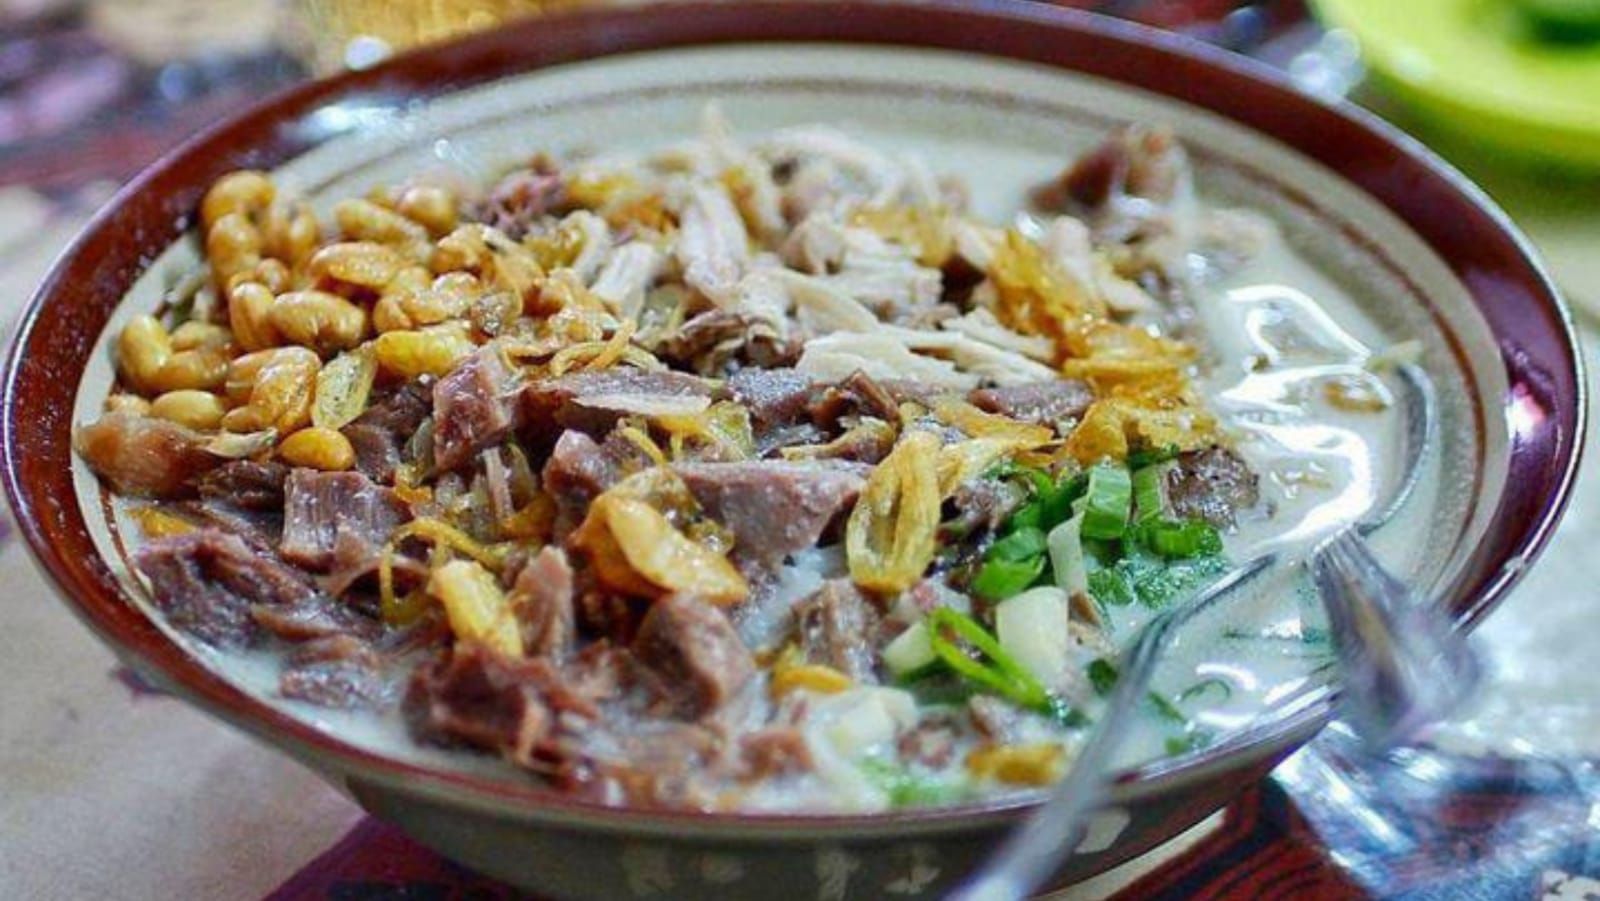 Sajian Soto Ayam Pataruman 23, salah satu tempat wisata kuliner hits yang bisa kamu coba saat berada di Tasikmalaya